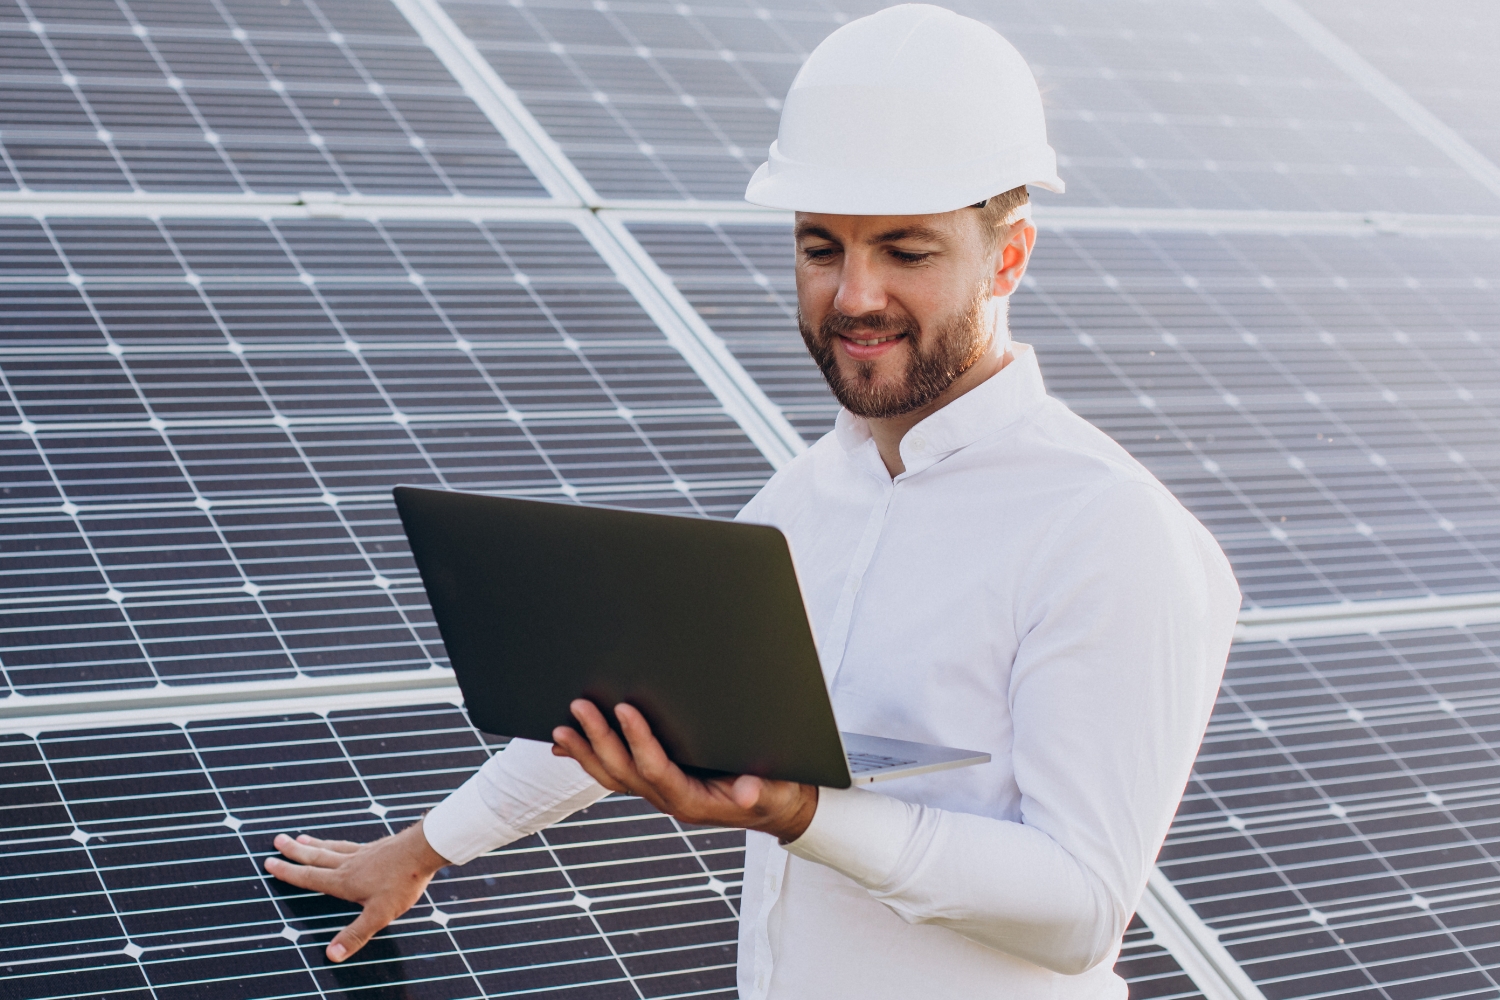 Offerta esclusiva di ammodernamento di Fotovoltaico su Impianti Esistenti